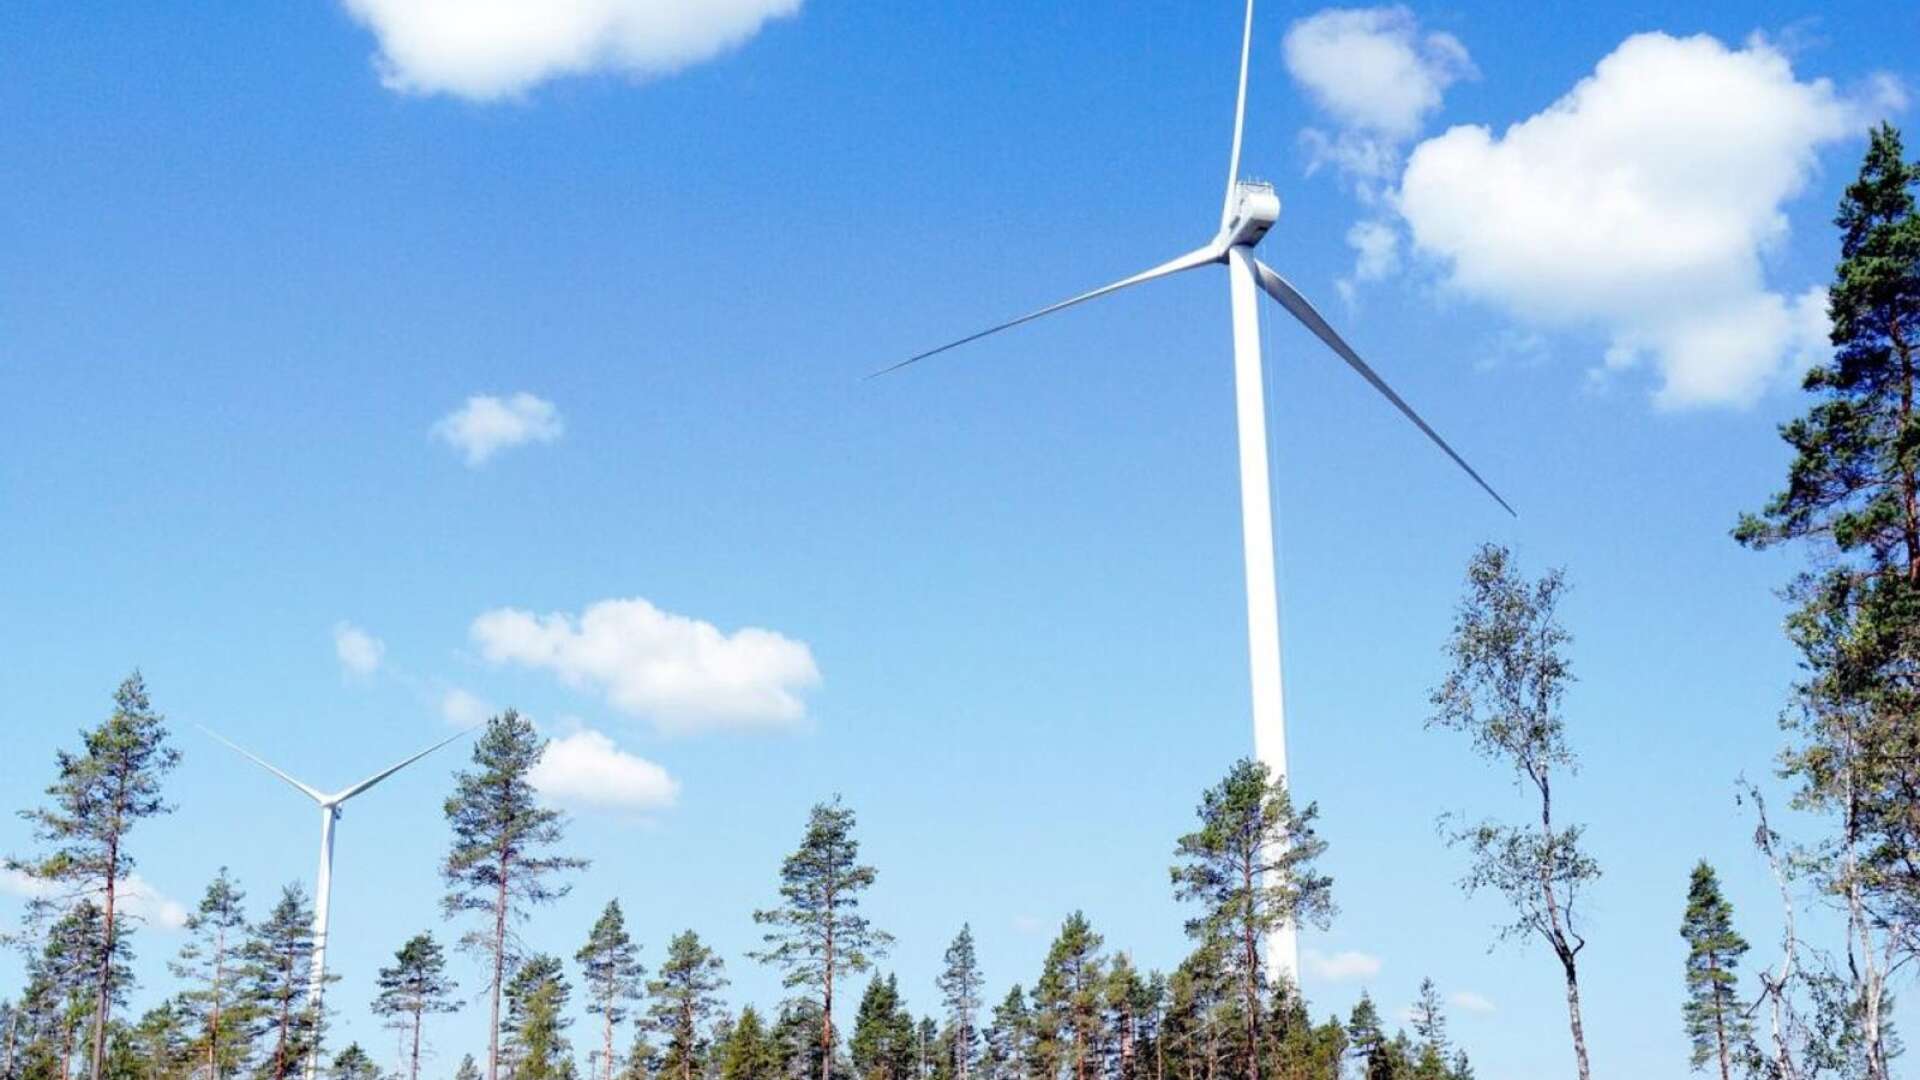 Ungefär en miljard kronor räknar Renewable Sweden med att investera i en ny vindkraftpark i Sillerud i Årjängs kommun. Den 5 oktober har man kallat till samrådsmöte för att berätta mer om projektet.